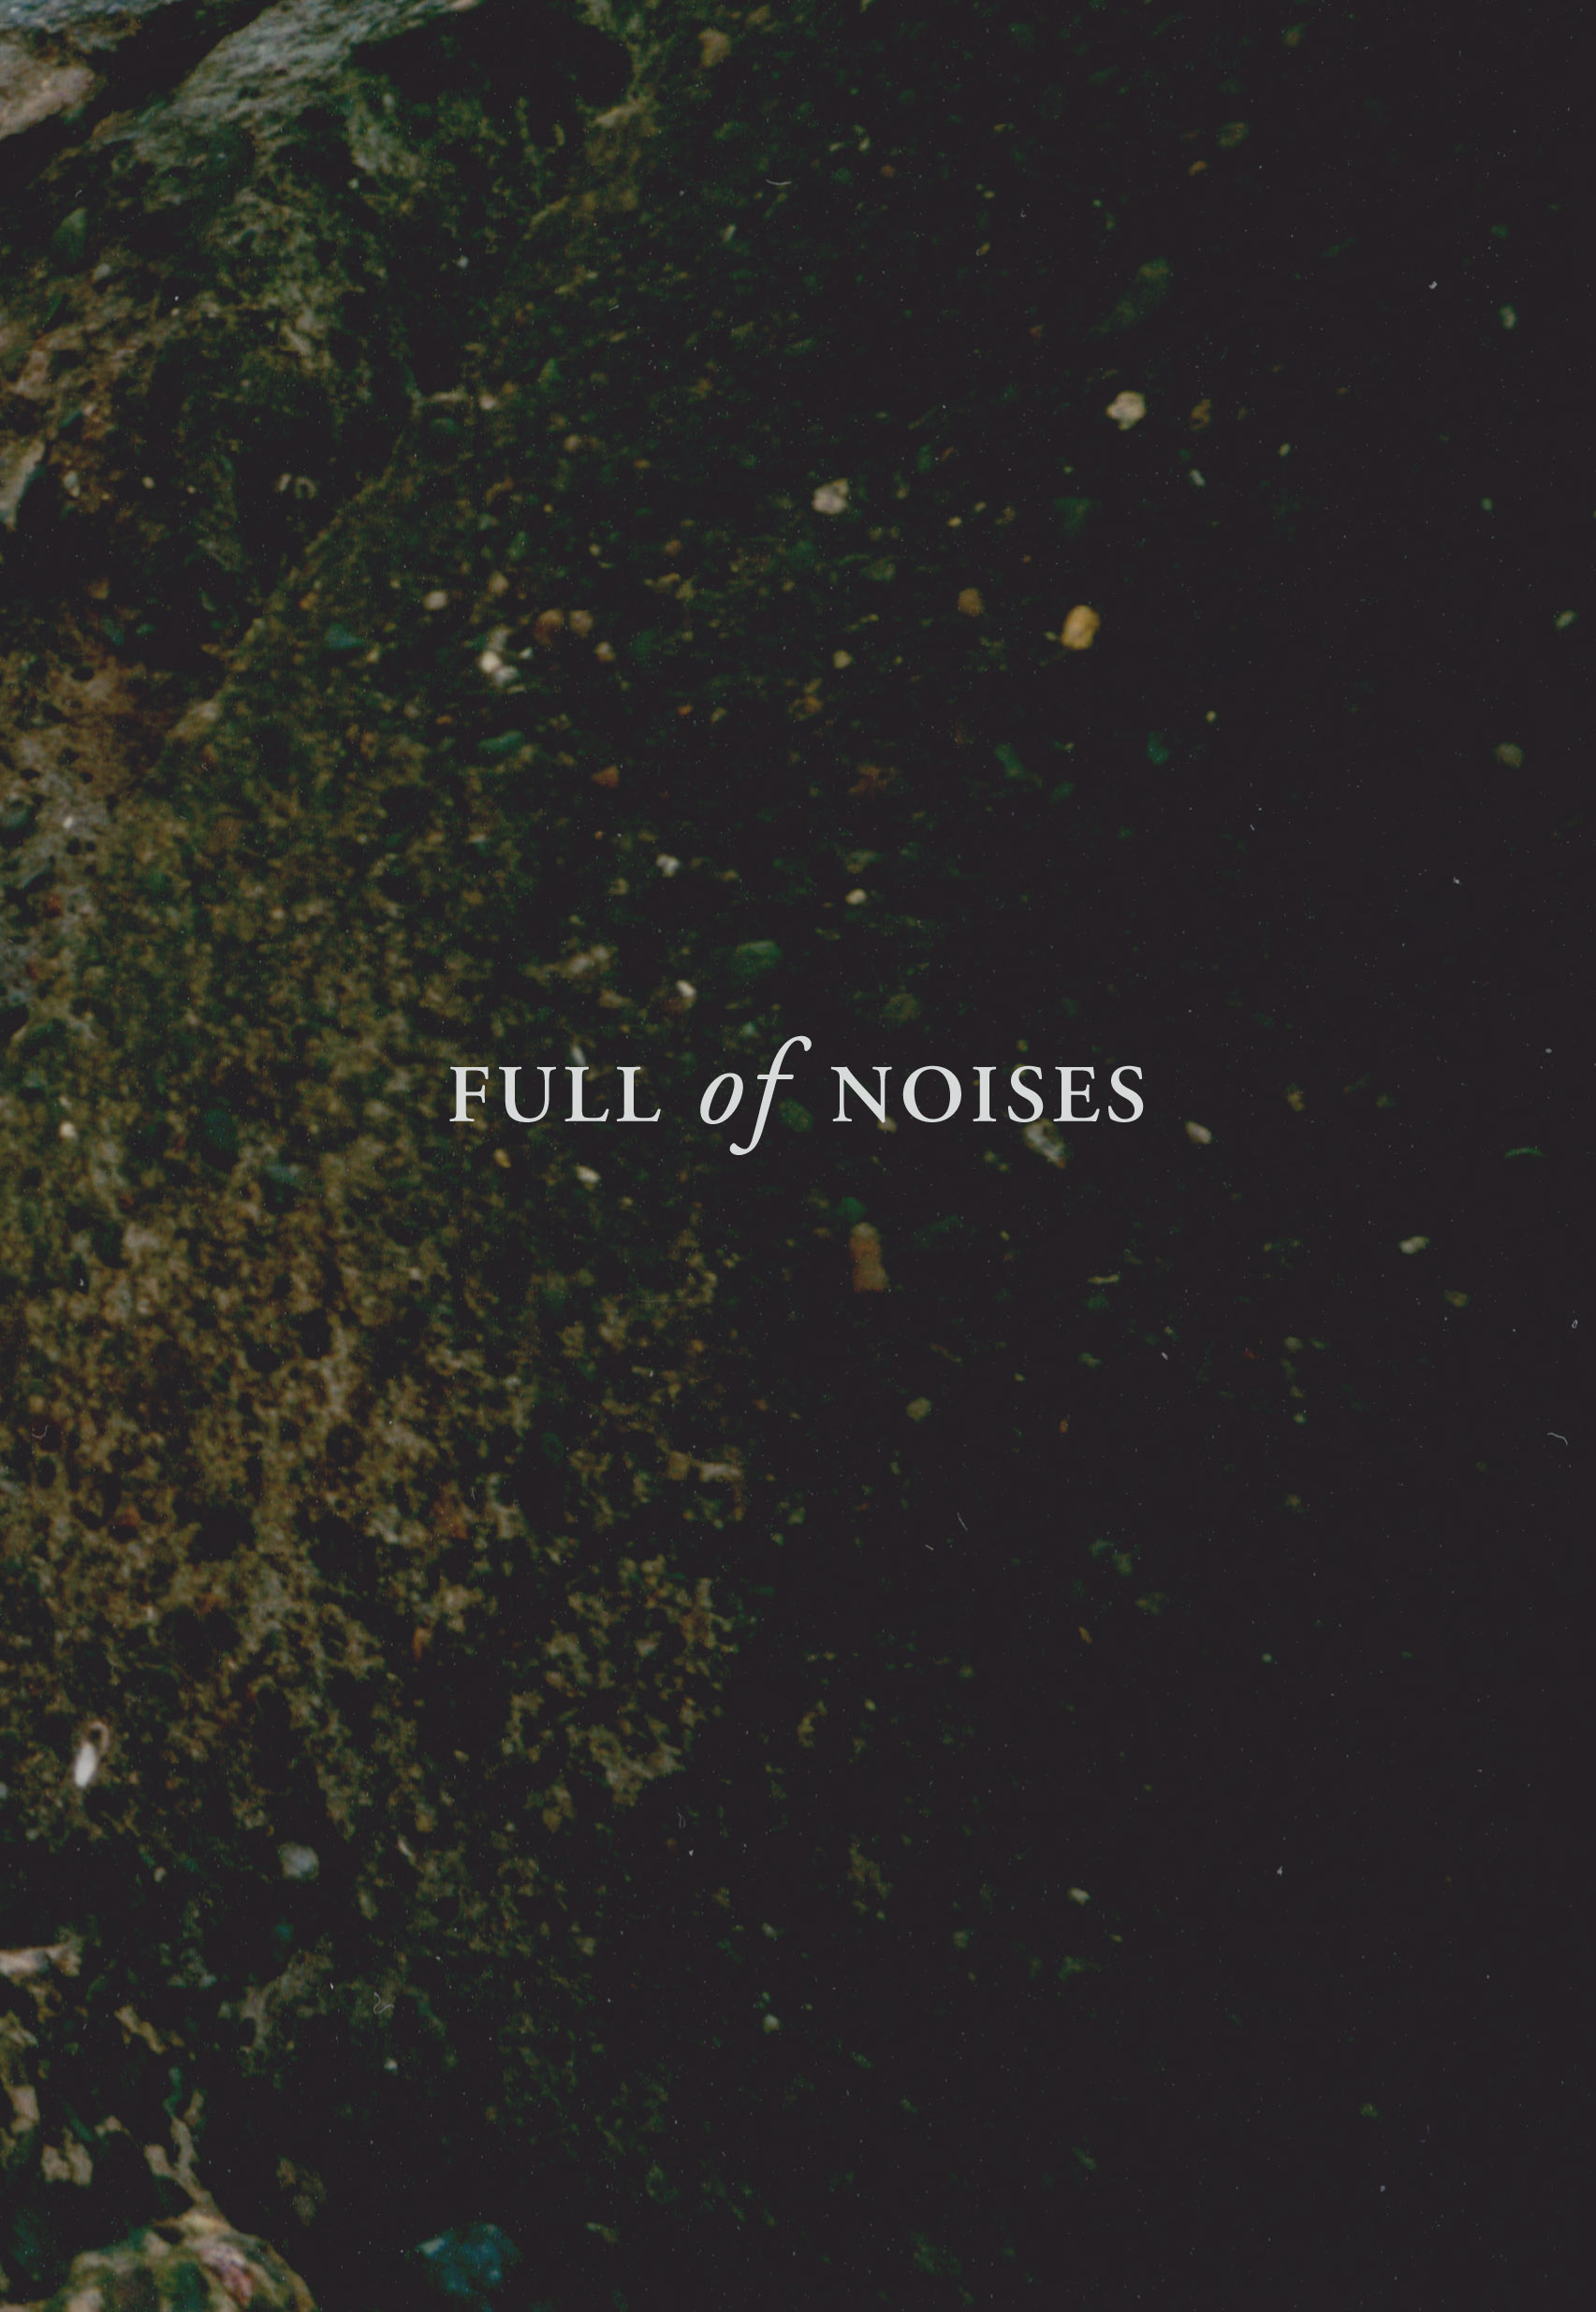 Full-of-Noises-Prog-15-8-1